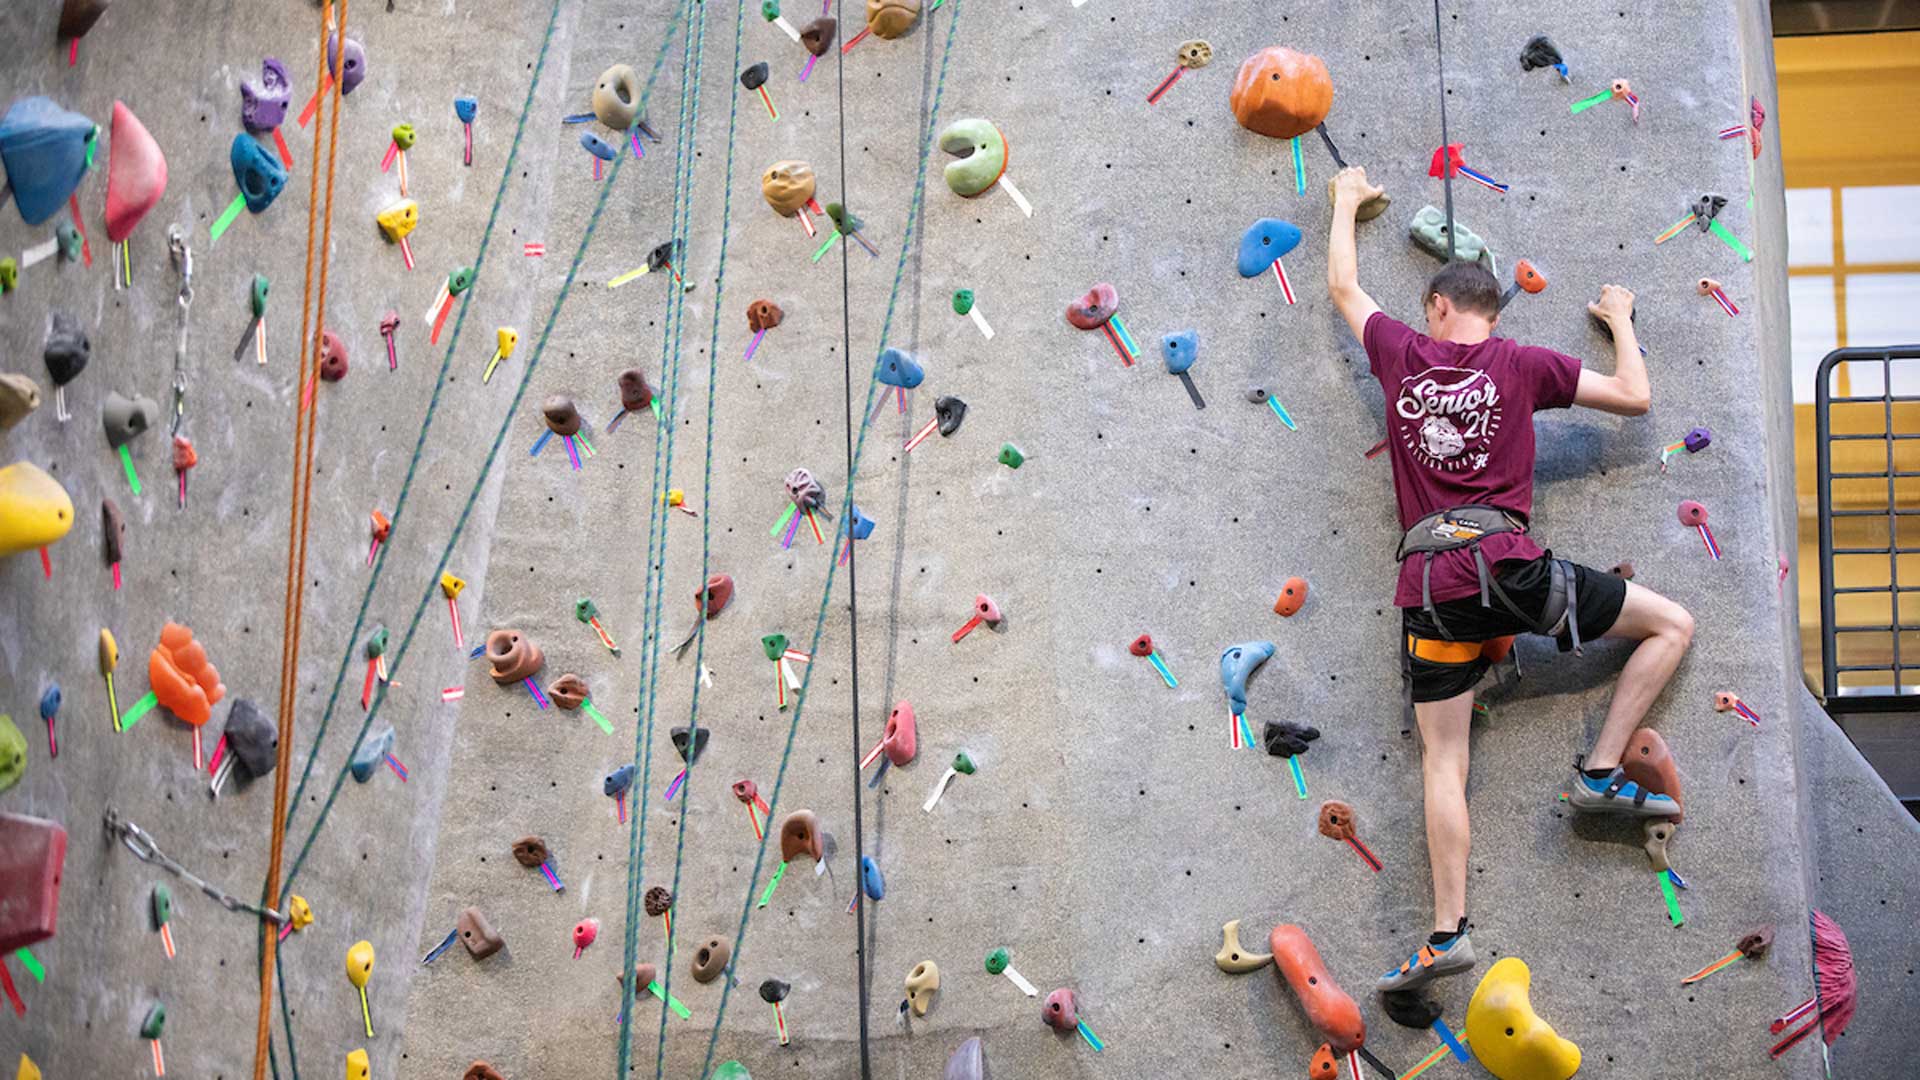 A student climbs up a rock climbing wall.